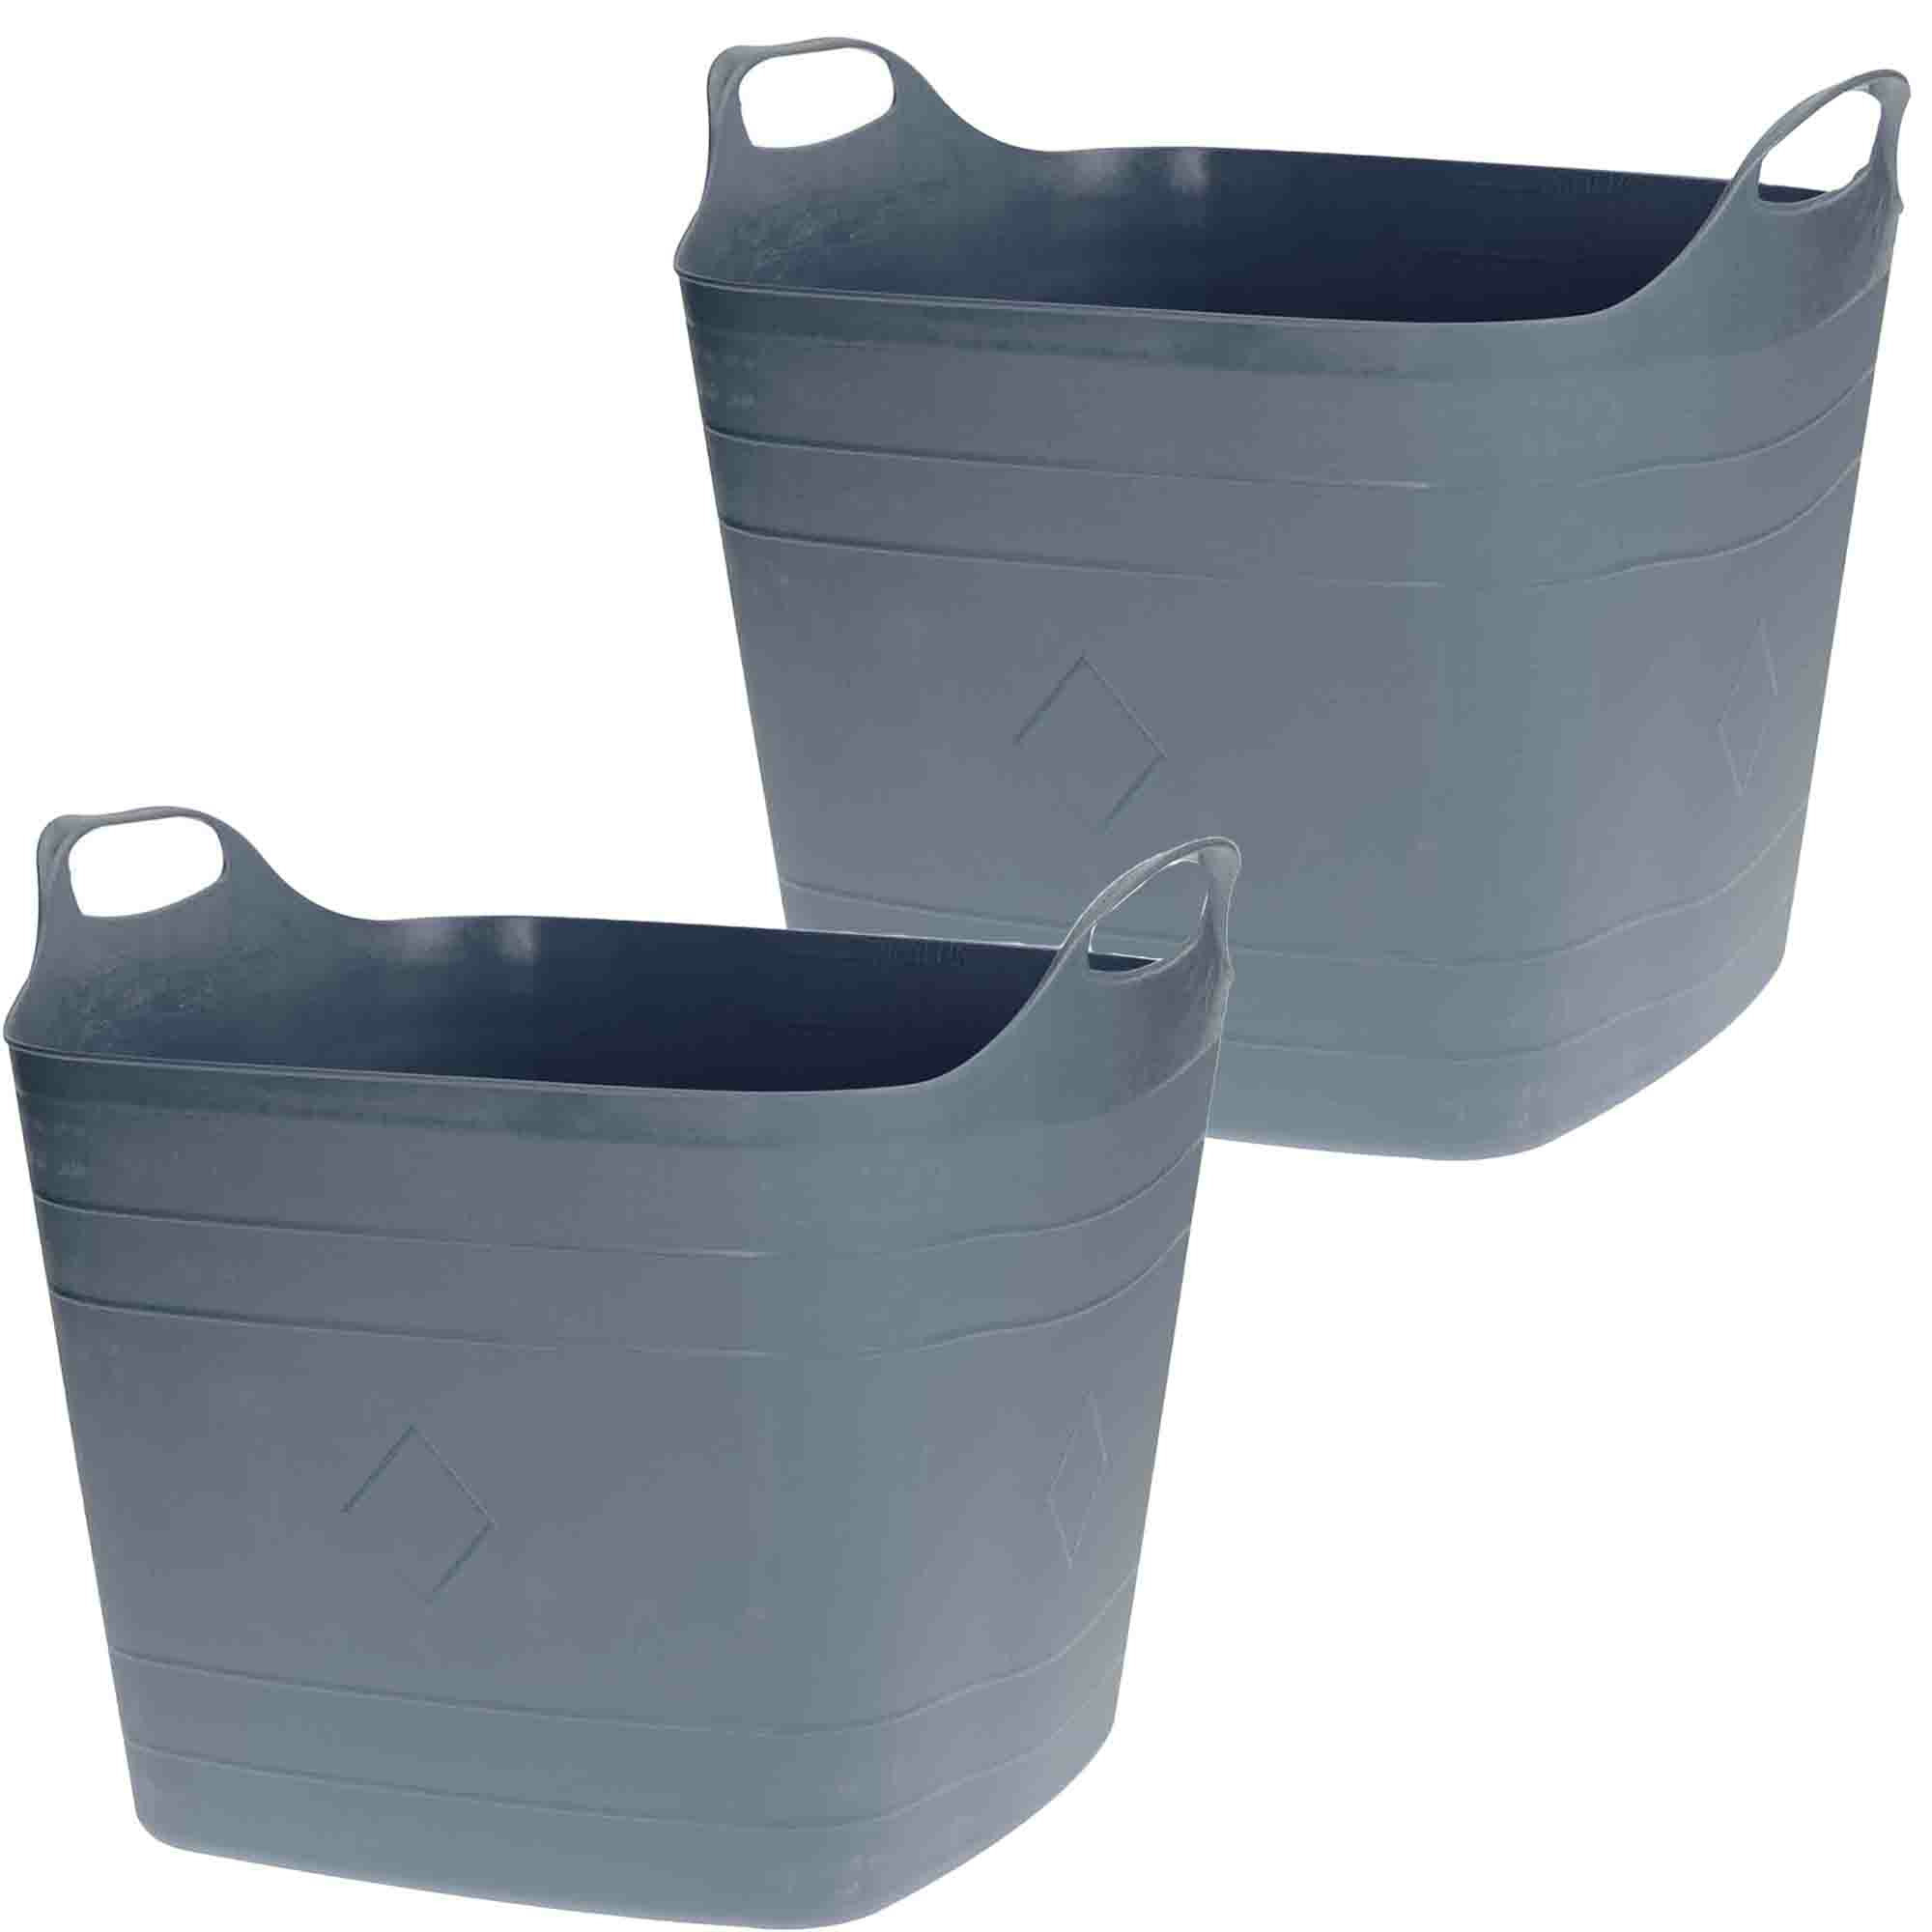 Bathroom Solutions flexibele kuip emmers/wasmanden - 2x stuks - 40 liter